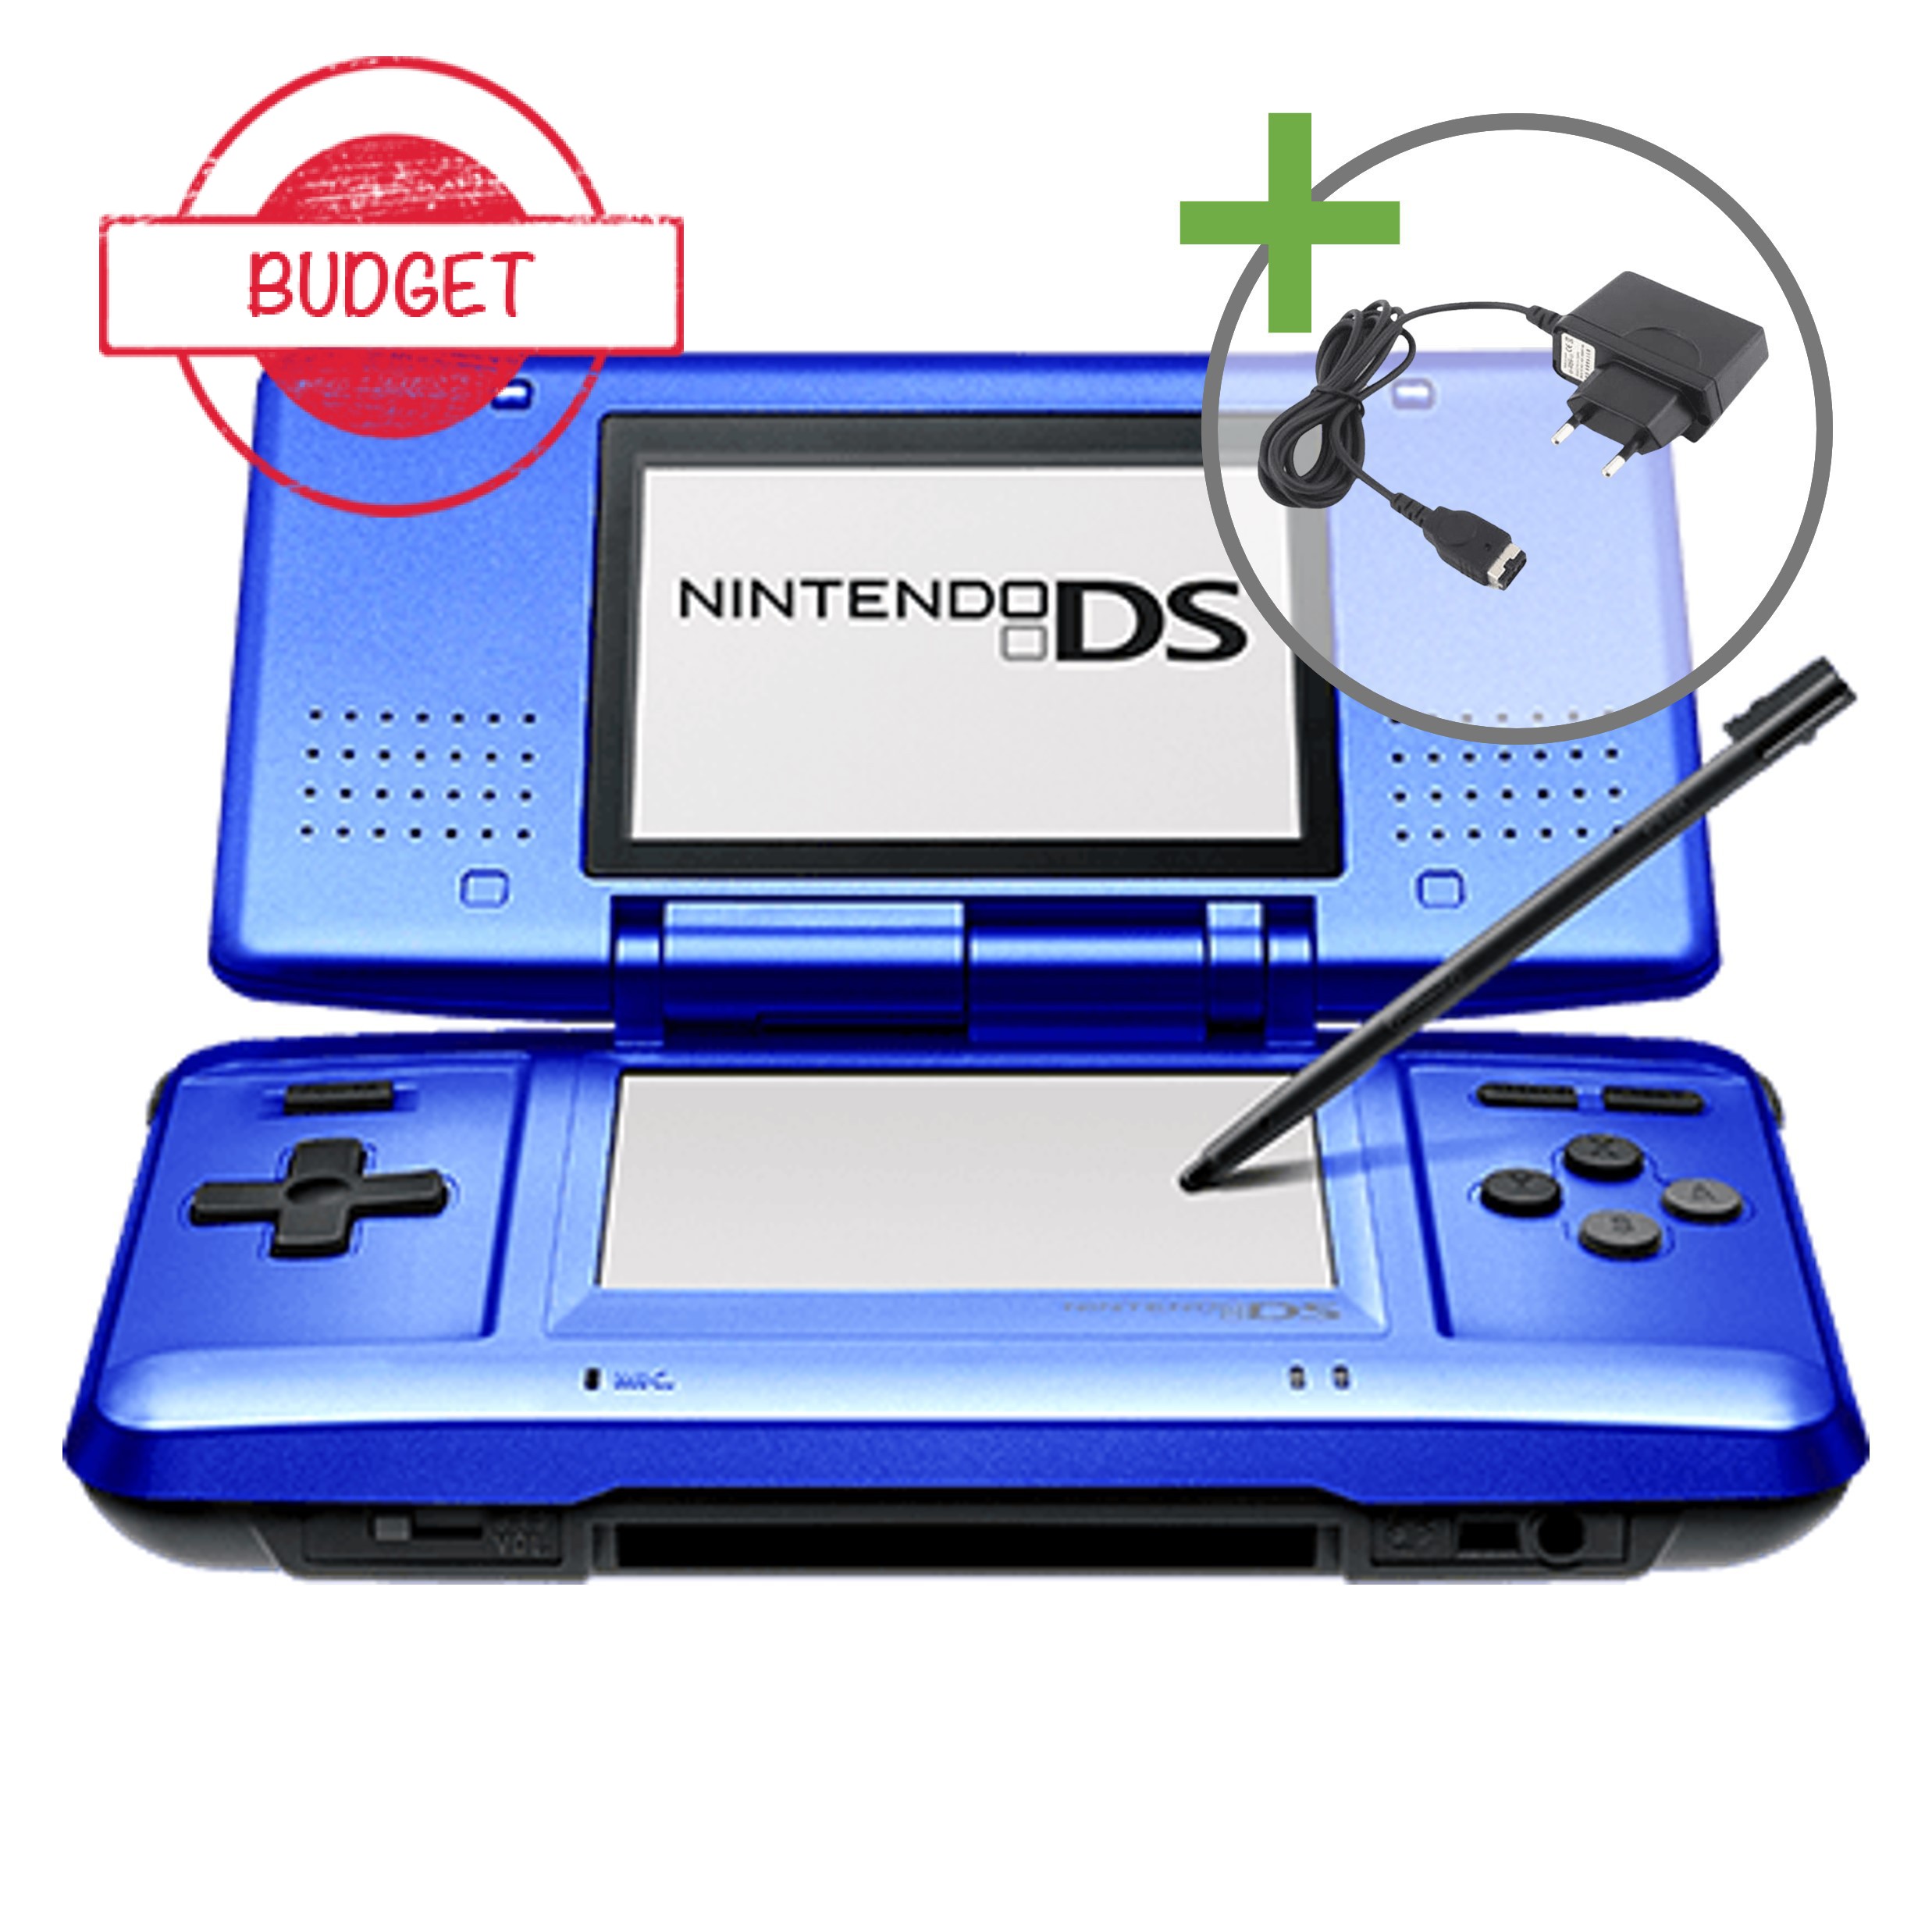 Nintendo DS Original - Ice Blue - Budget - Nintendo DS Hardware